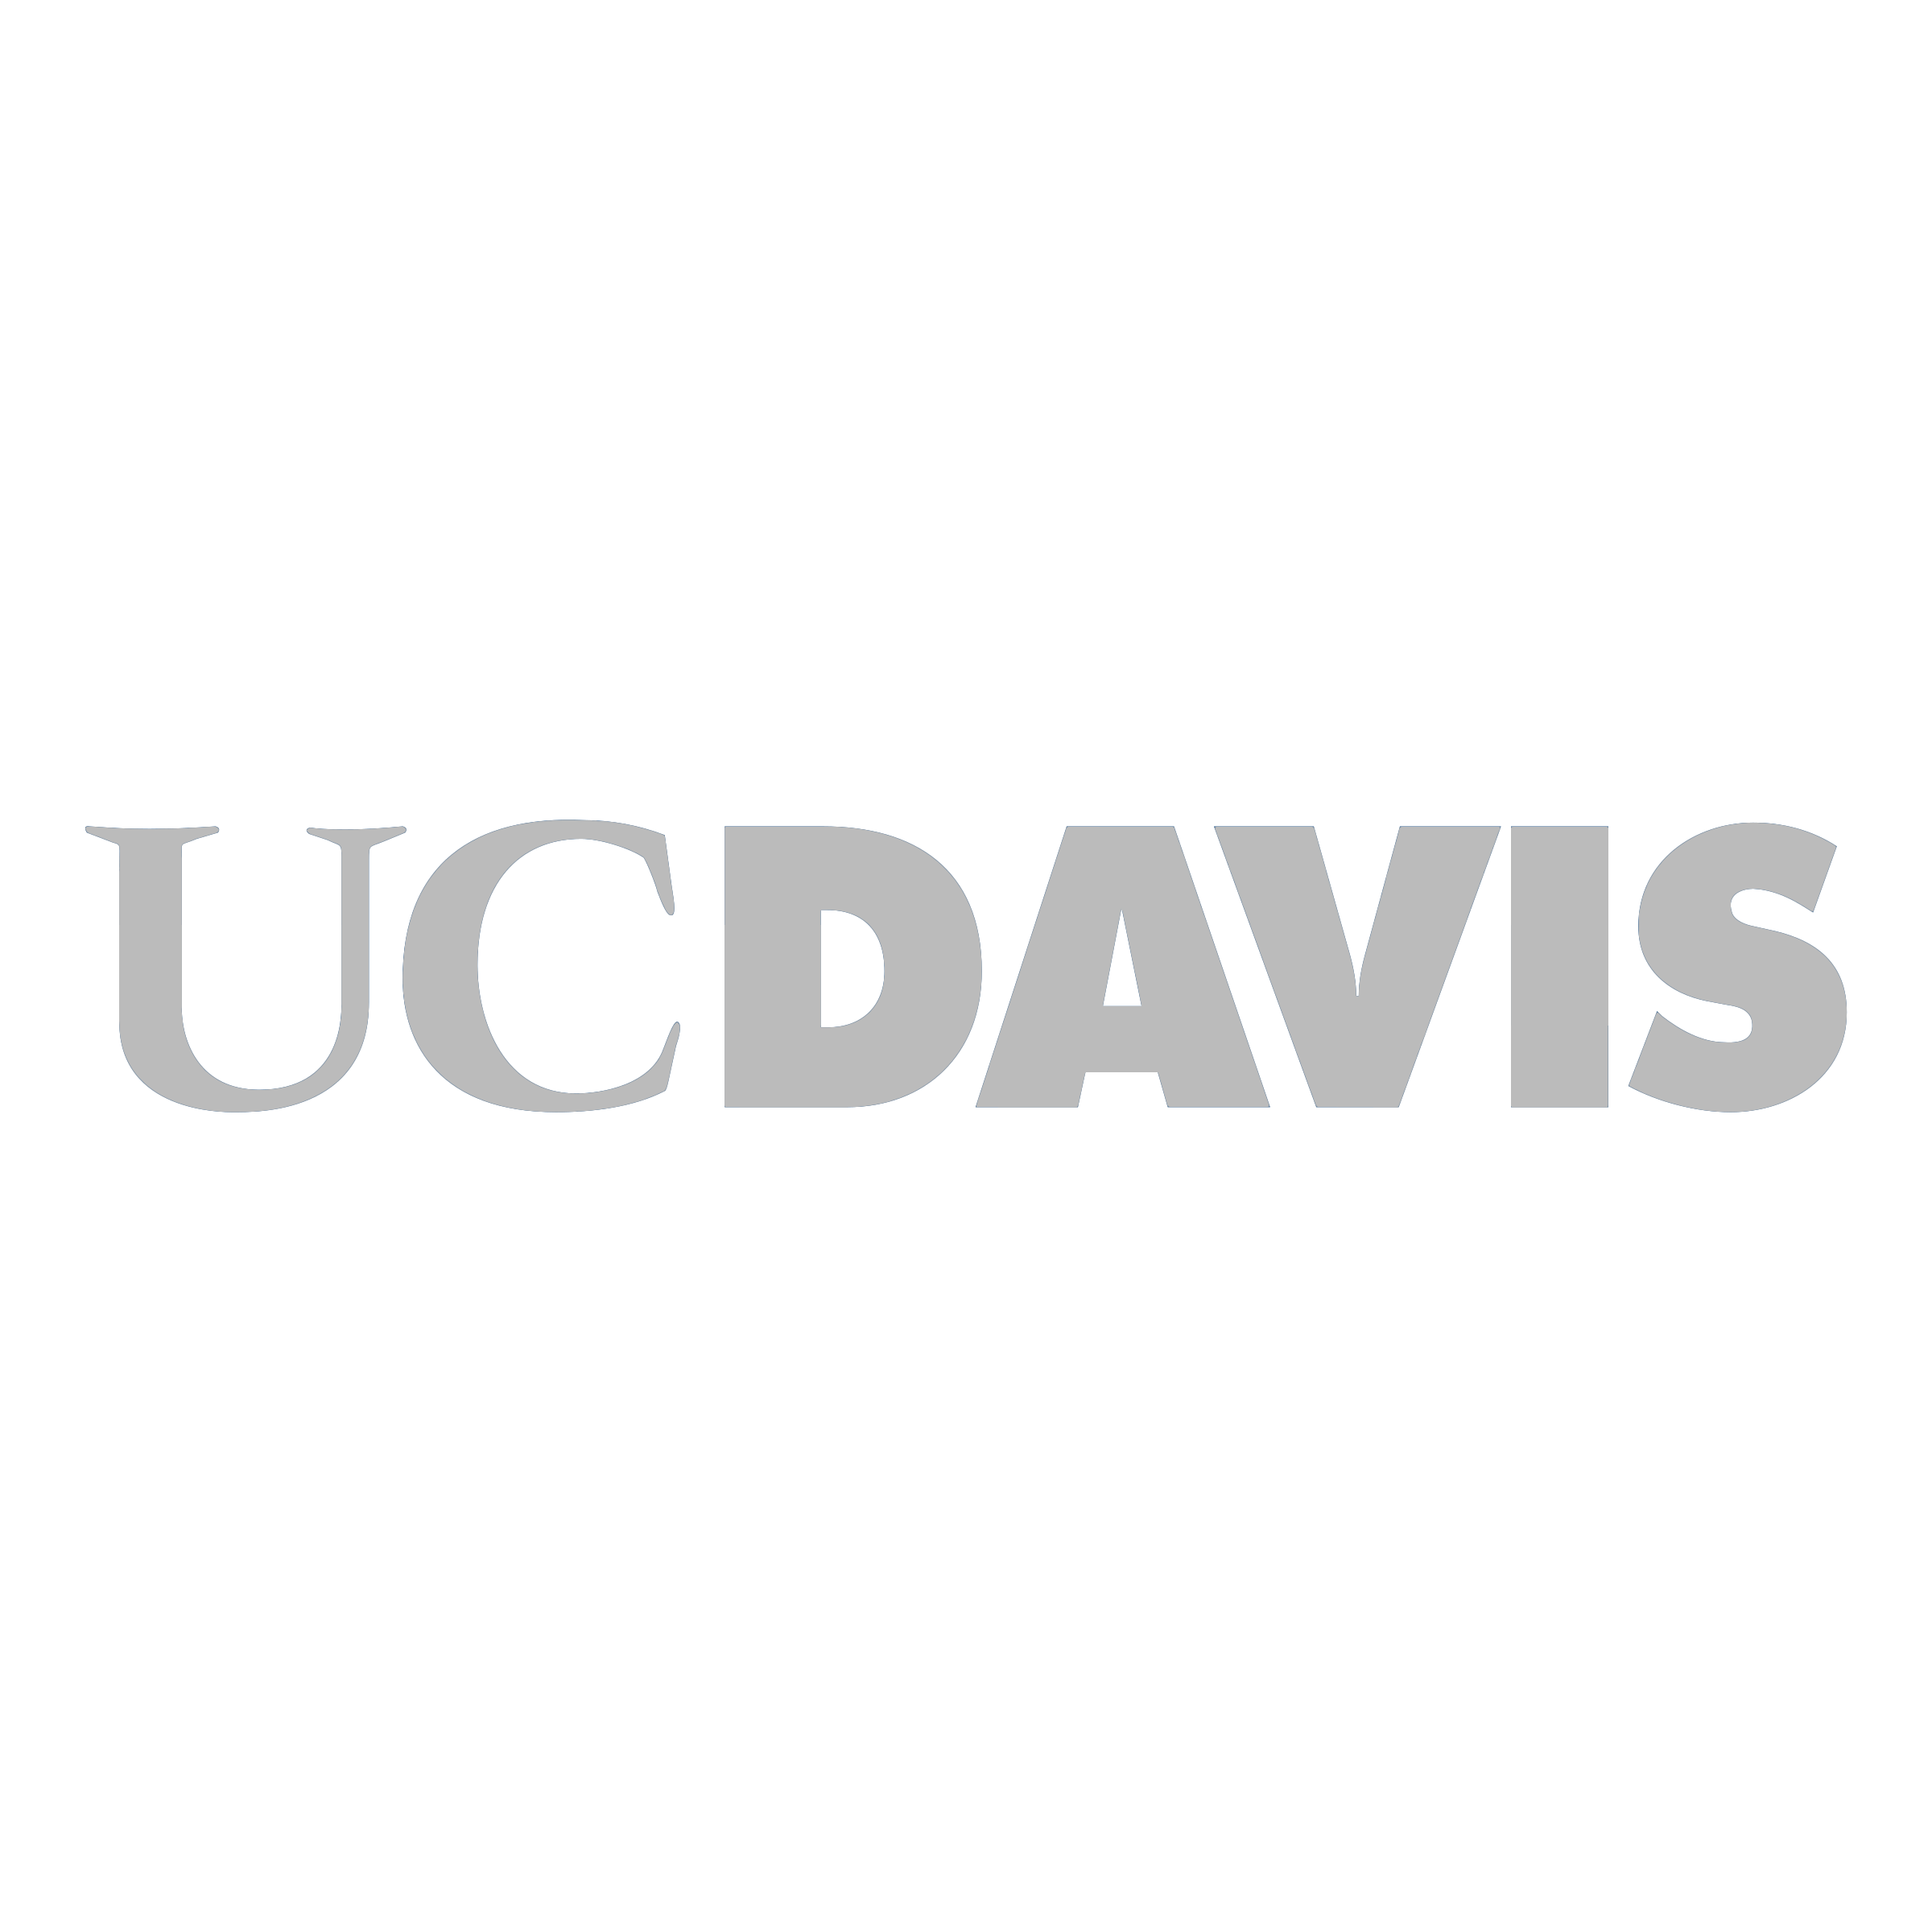 uc-davis-logo-png-transparent.png